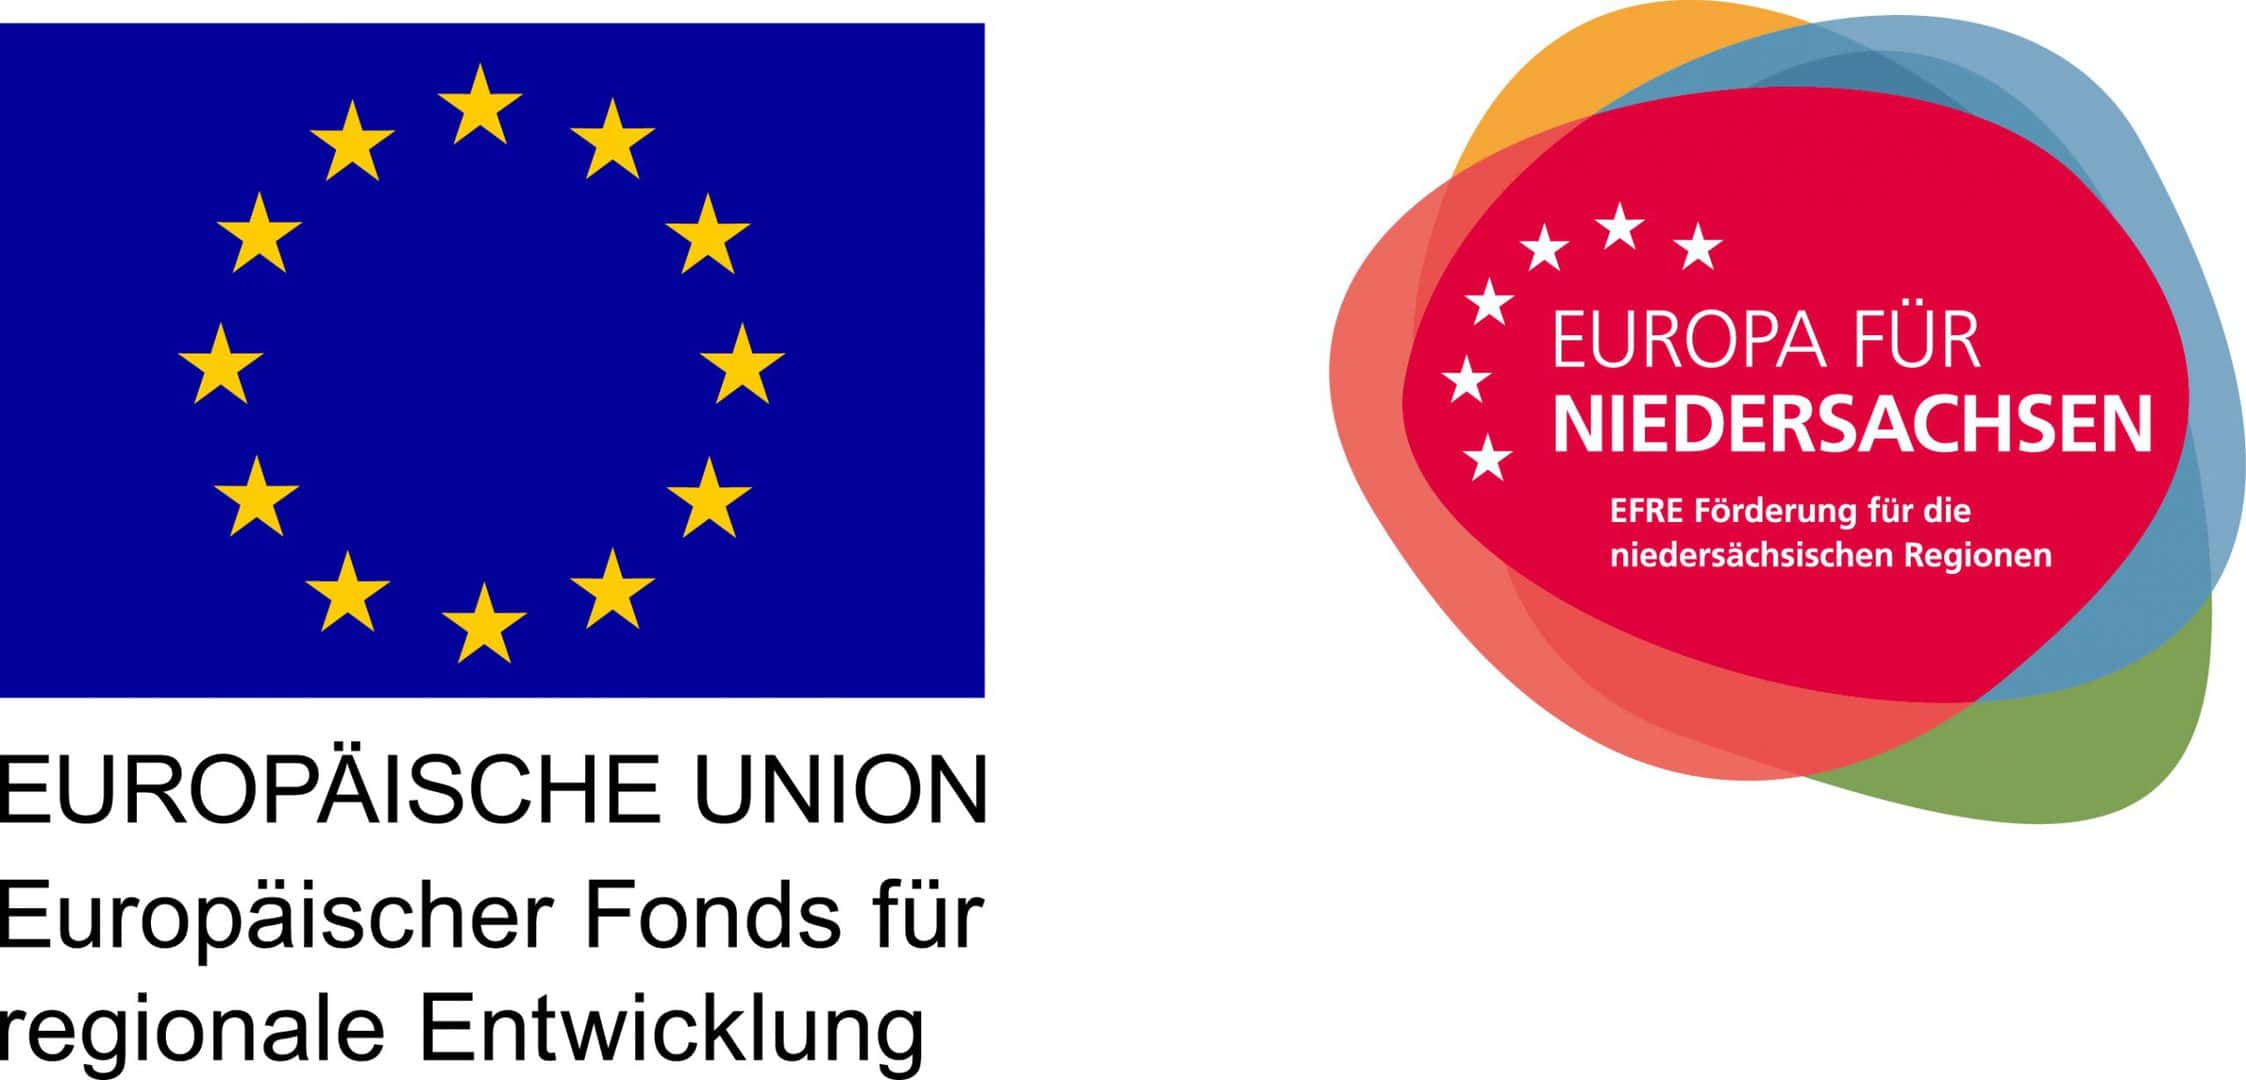 Schaffung und Besetzung eines sozialversicherungspflichtigen Arbeitsplatz mit Mitteln des Europäischen Fonds für regionale Entwicklung